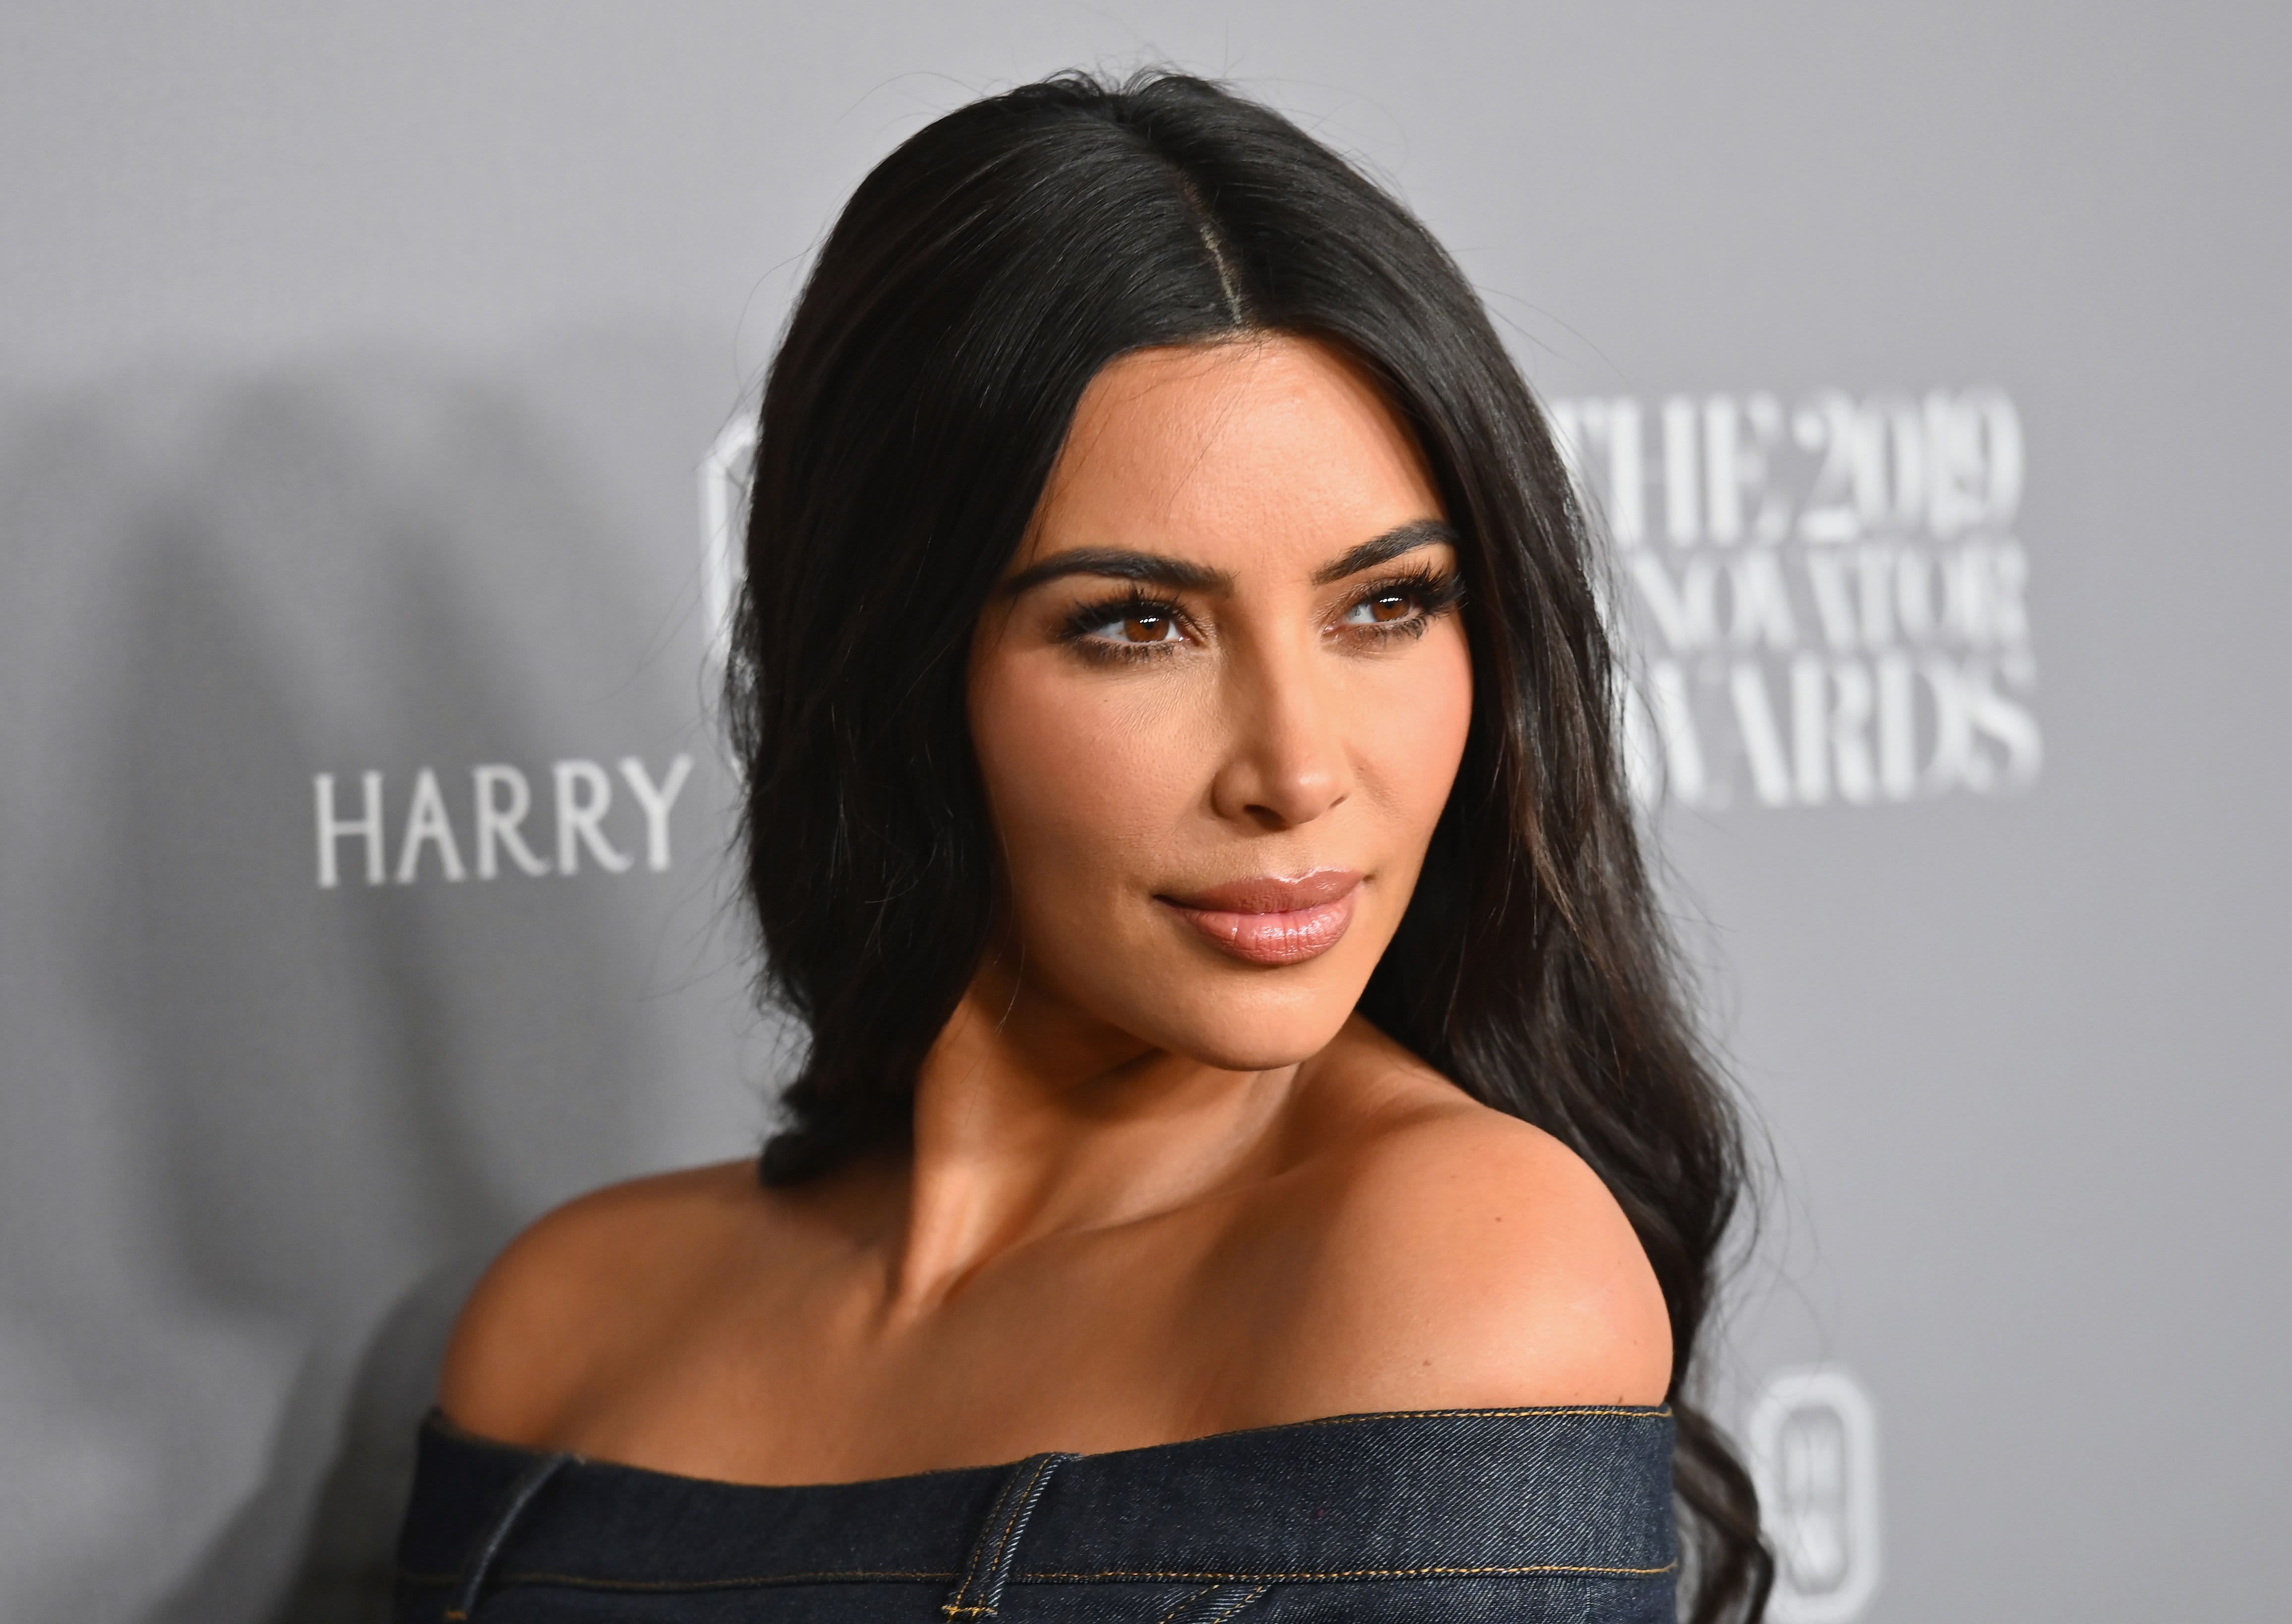 Kim Kardashian West, other celebs, will boycott Instagram for one day